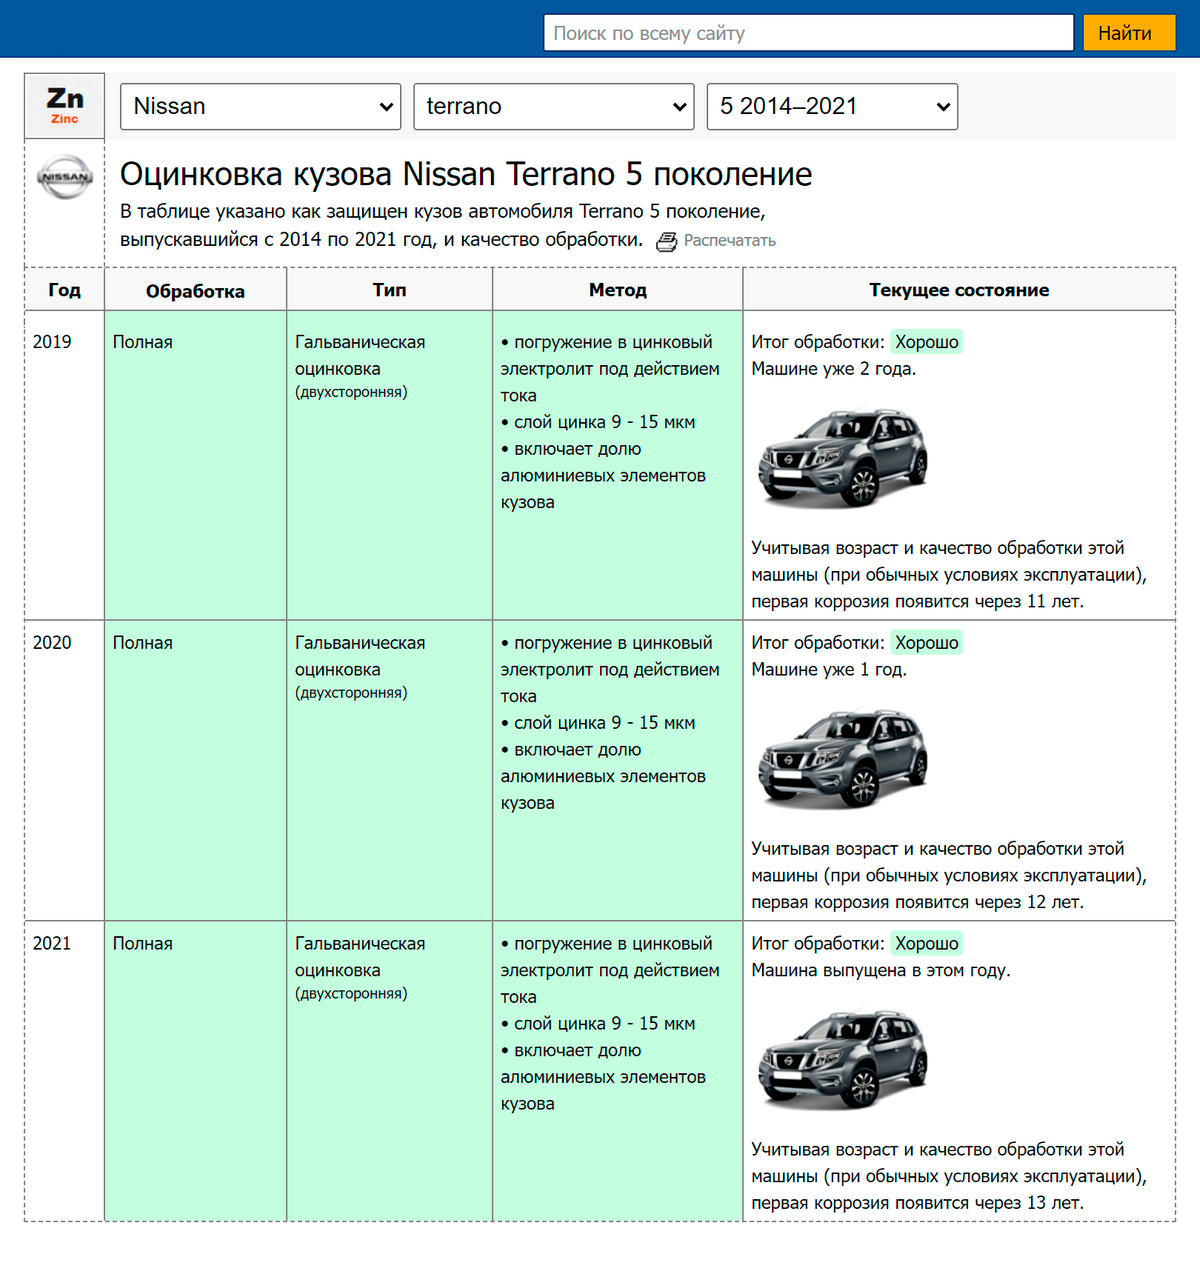 Для&nbsp;сравнения: по&nbsp;прогнозной оценке, антикоррозийной защиты кузова конкурента Nissan&nbsp;Terrano хватит на&nbsp;13 лет. Источник: autogener.ru